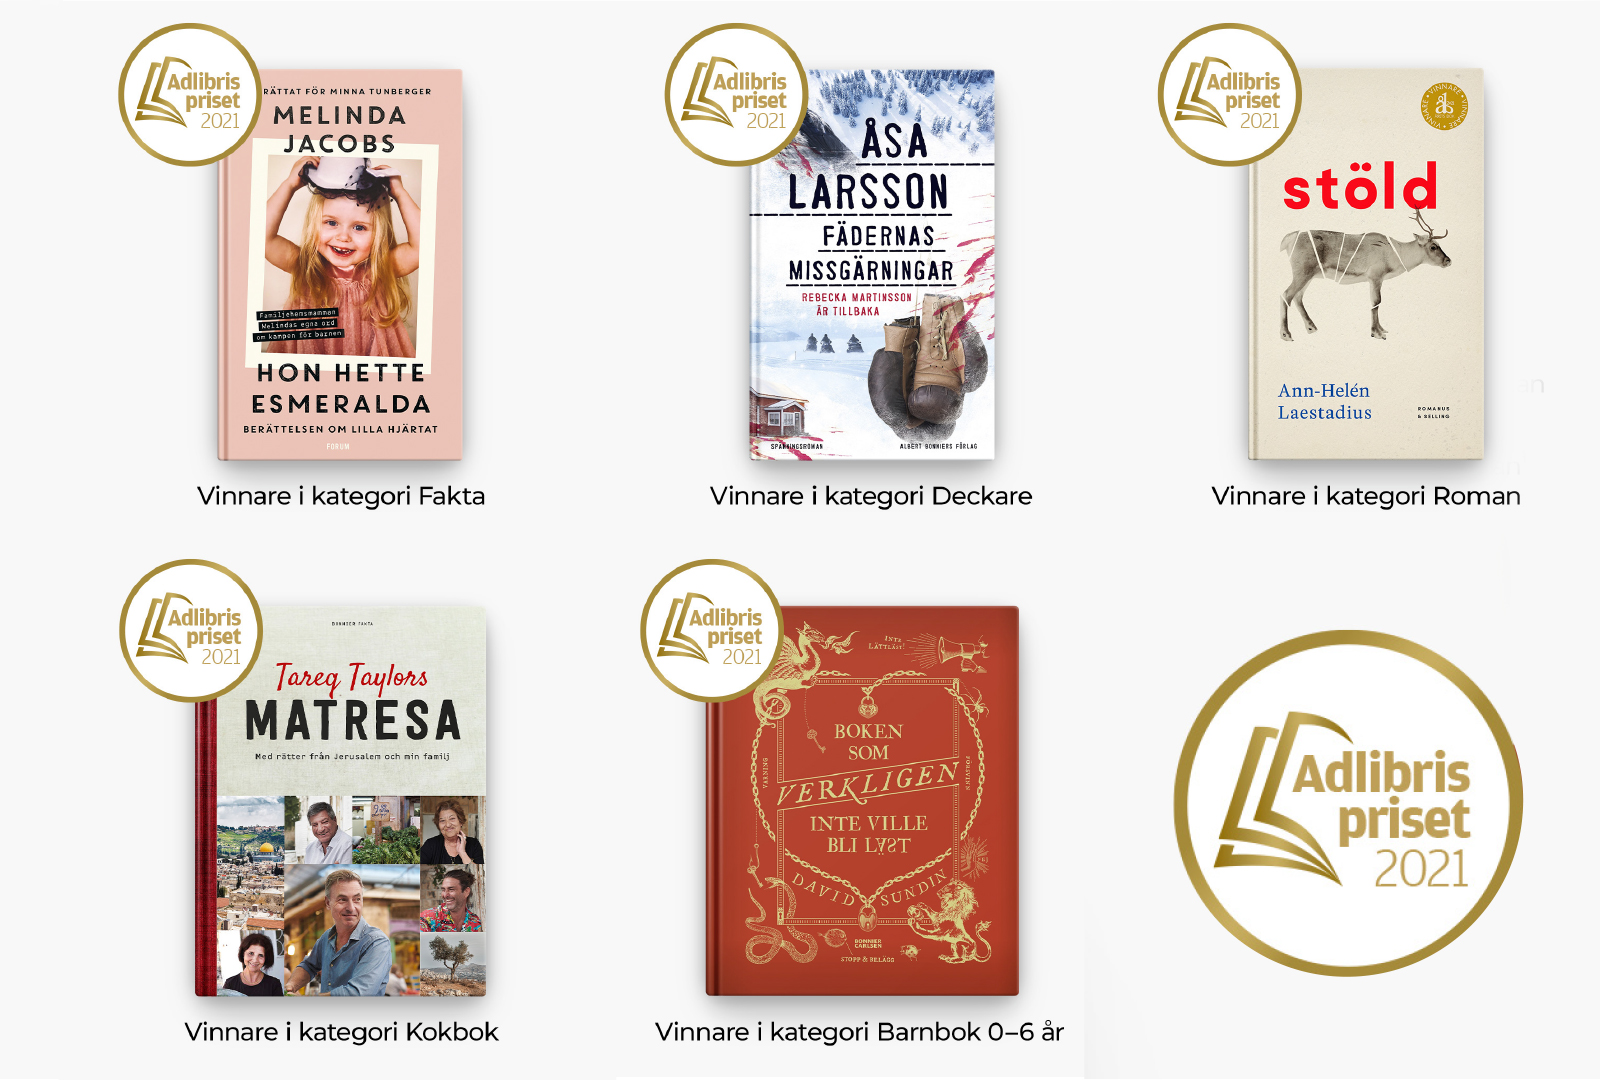 Adlibrispriset 2021: Fem böcker från Bonnierförlagen prisas